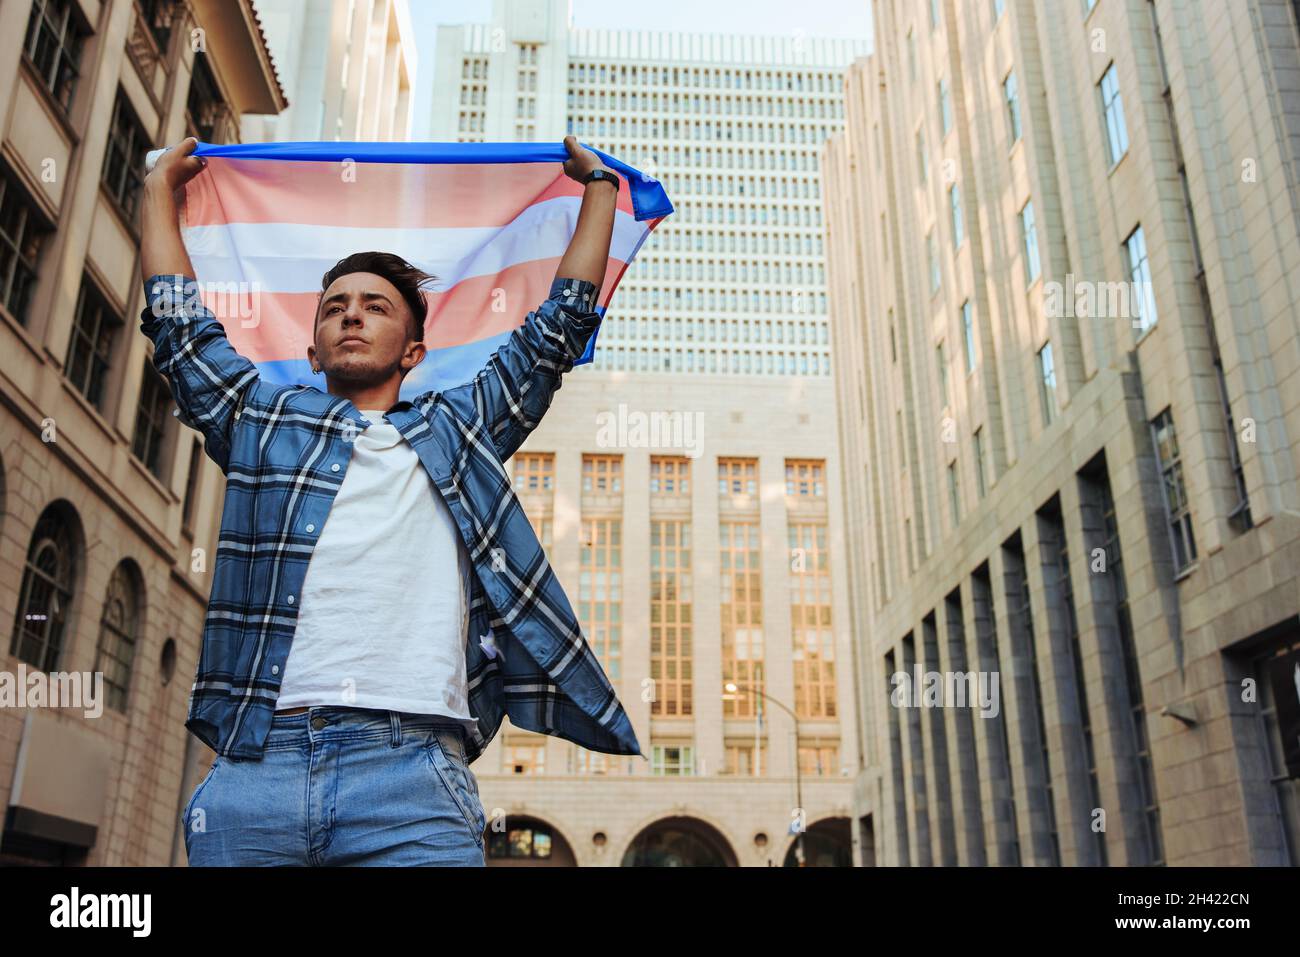 Homme non conforme élevant le drapeau transgenre à l'extérieur.Un jeune homme transgenre confiant célébrant la fierté gay dans la ville.Jeune sexe non conforme Banque D'Images